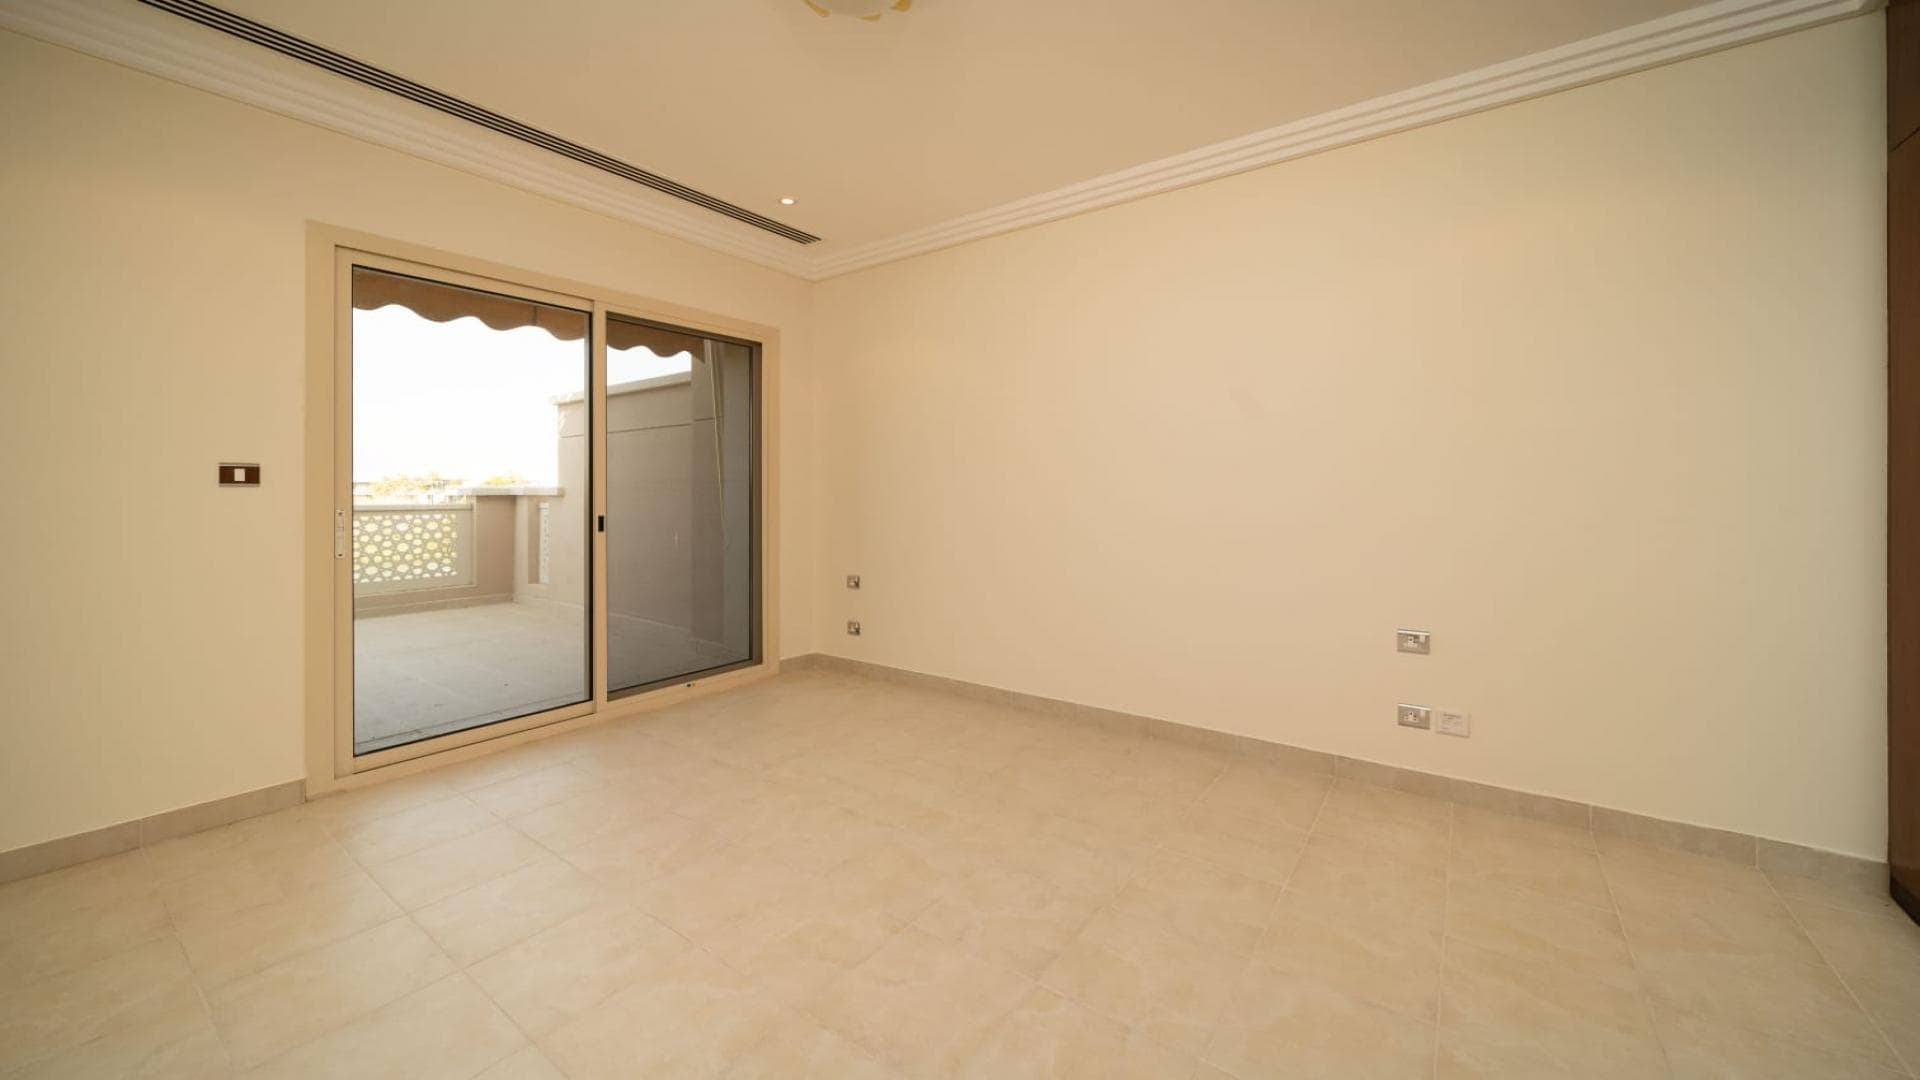 3 Bedroom Villa For Rent Fatimah Saleh Building Lp38967 191655685cf38700.jpg